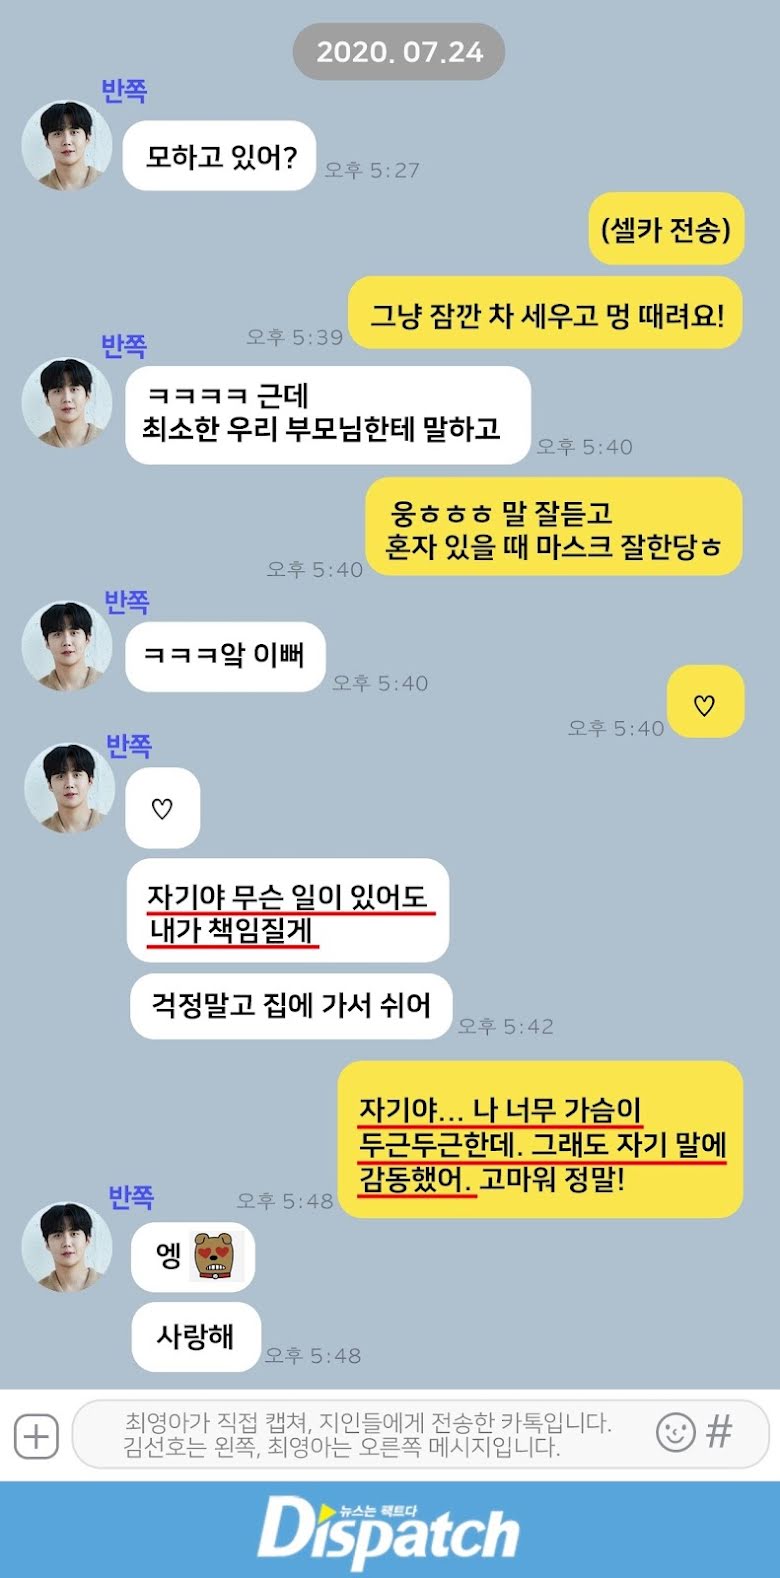 Dispatch tung 284 tin nhắn, hé lộ phản ứng của Kim Seon Ho khi biết bạn gái có thai: 'Chúng ta kết hôn đi, anh yêu em' - ảnh 4